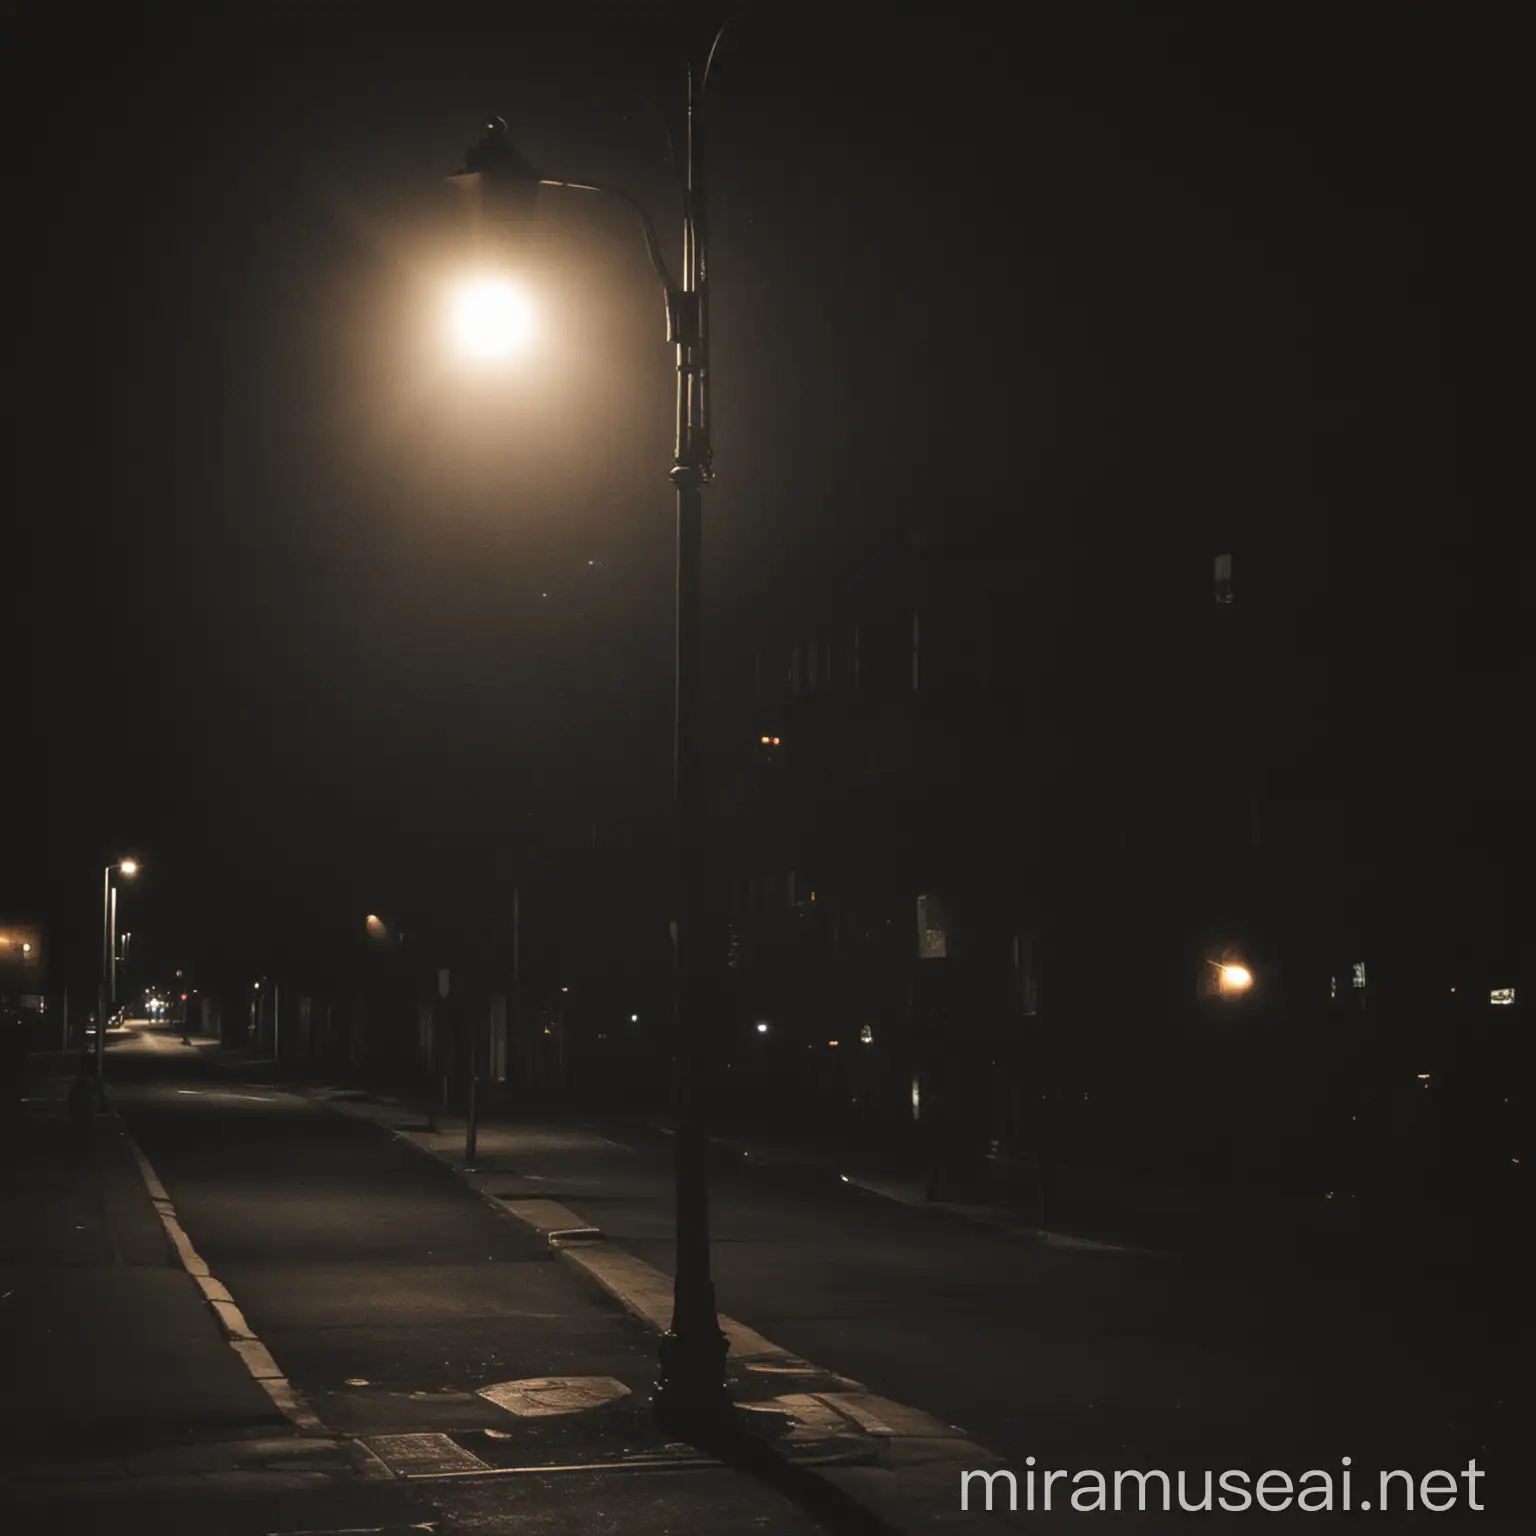 A streetlight shining on a dark street at night